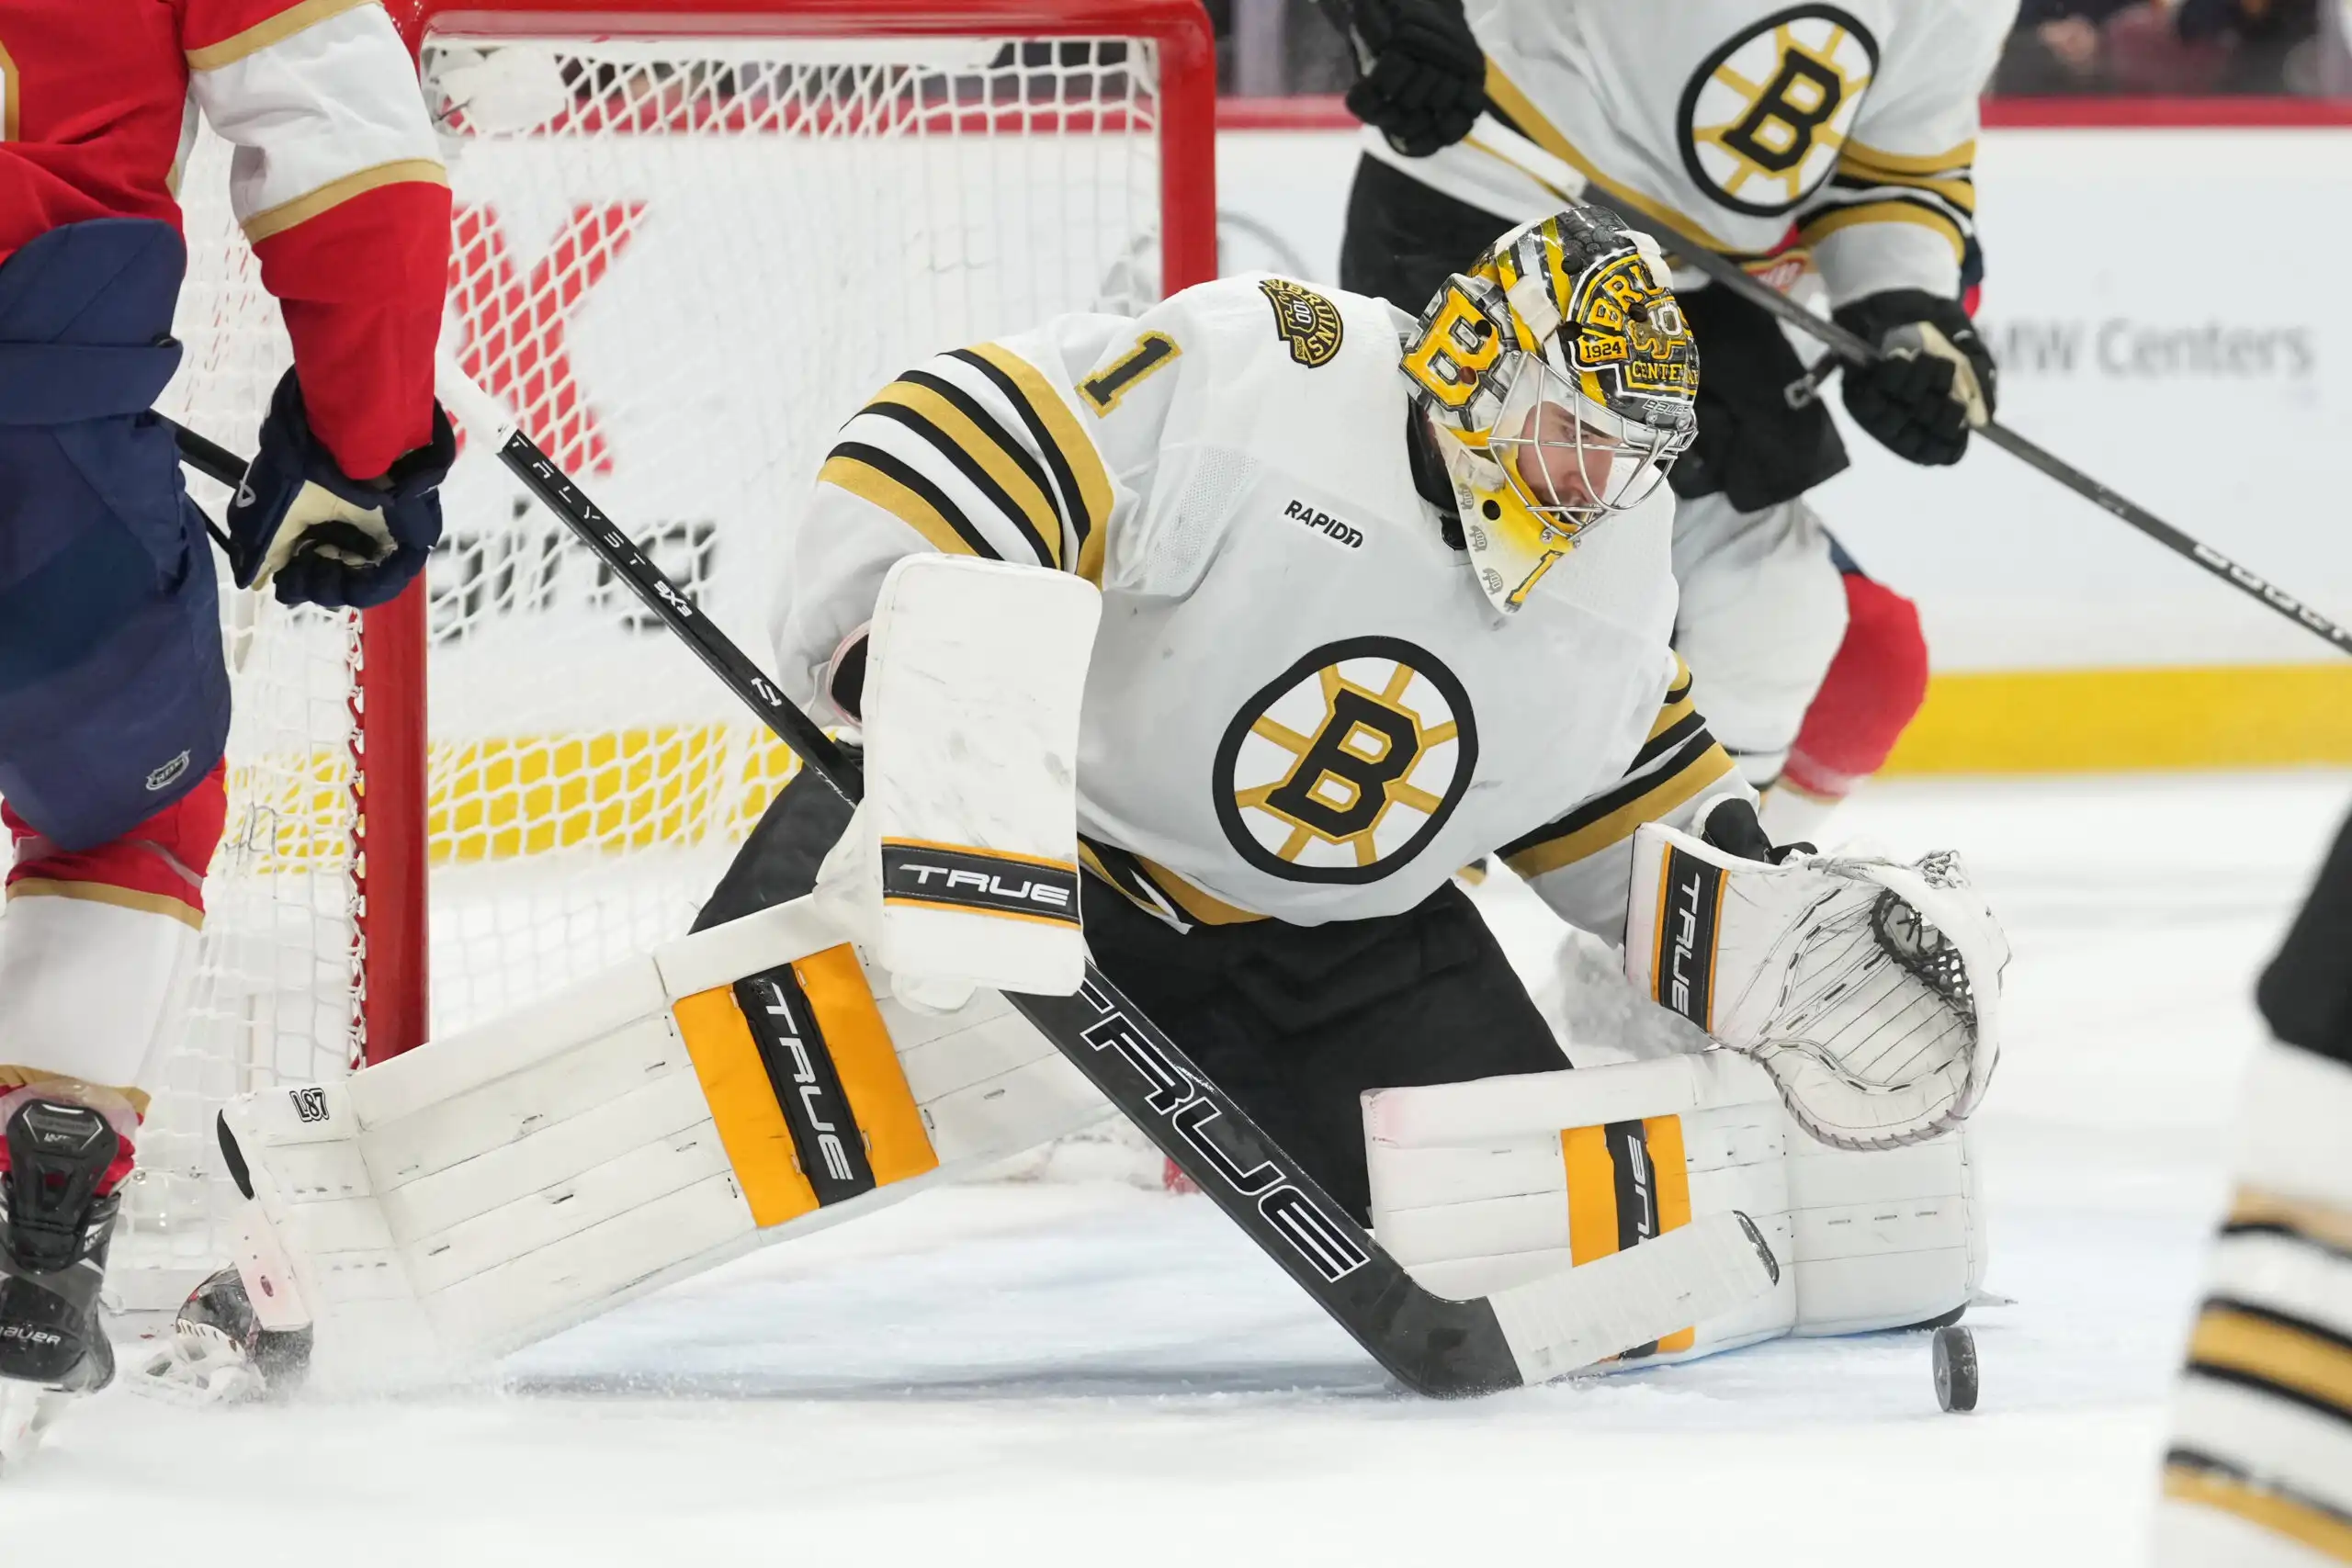 La desesperación y el esfuerzo defensivo de los Bruins conducen al Juego 6 - The Hockey Writers